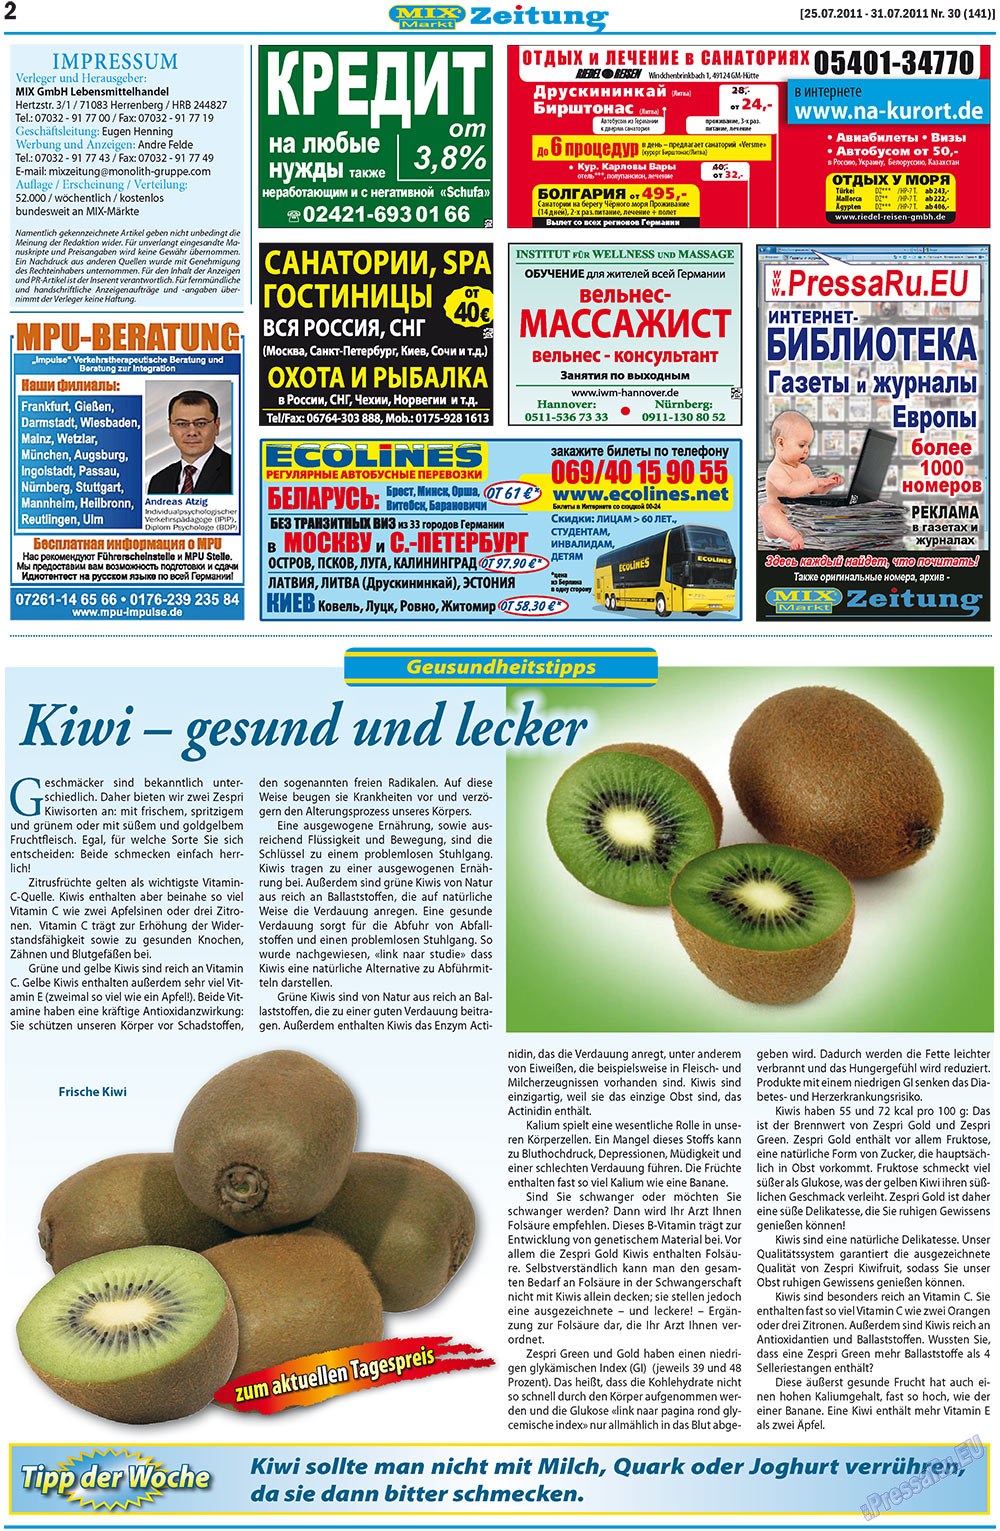 MIX-Markt Zeitung (газета). 2011 год, номер 30, стр. 2